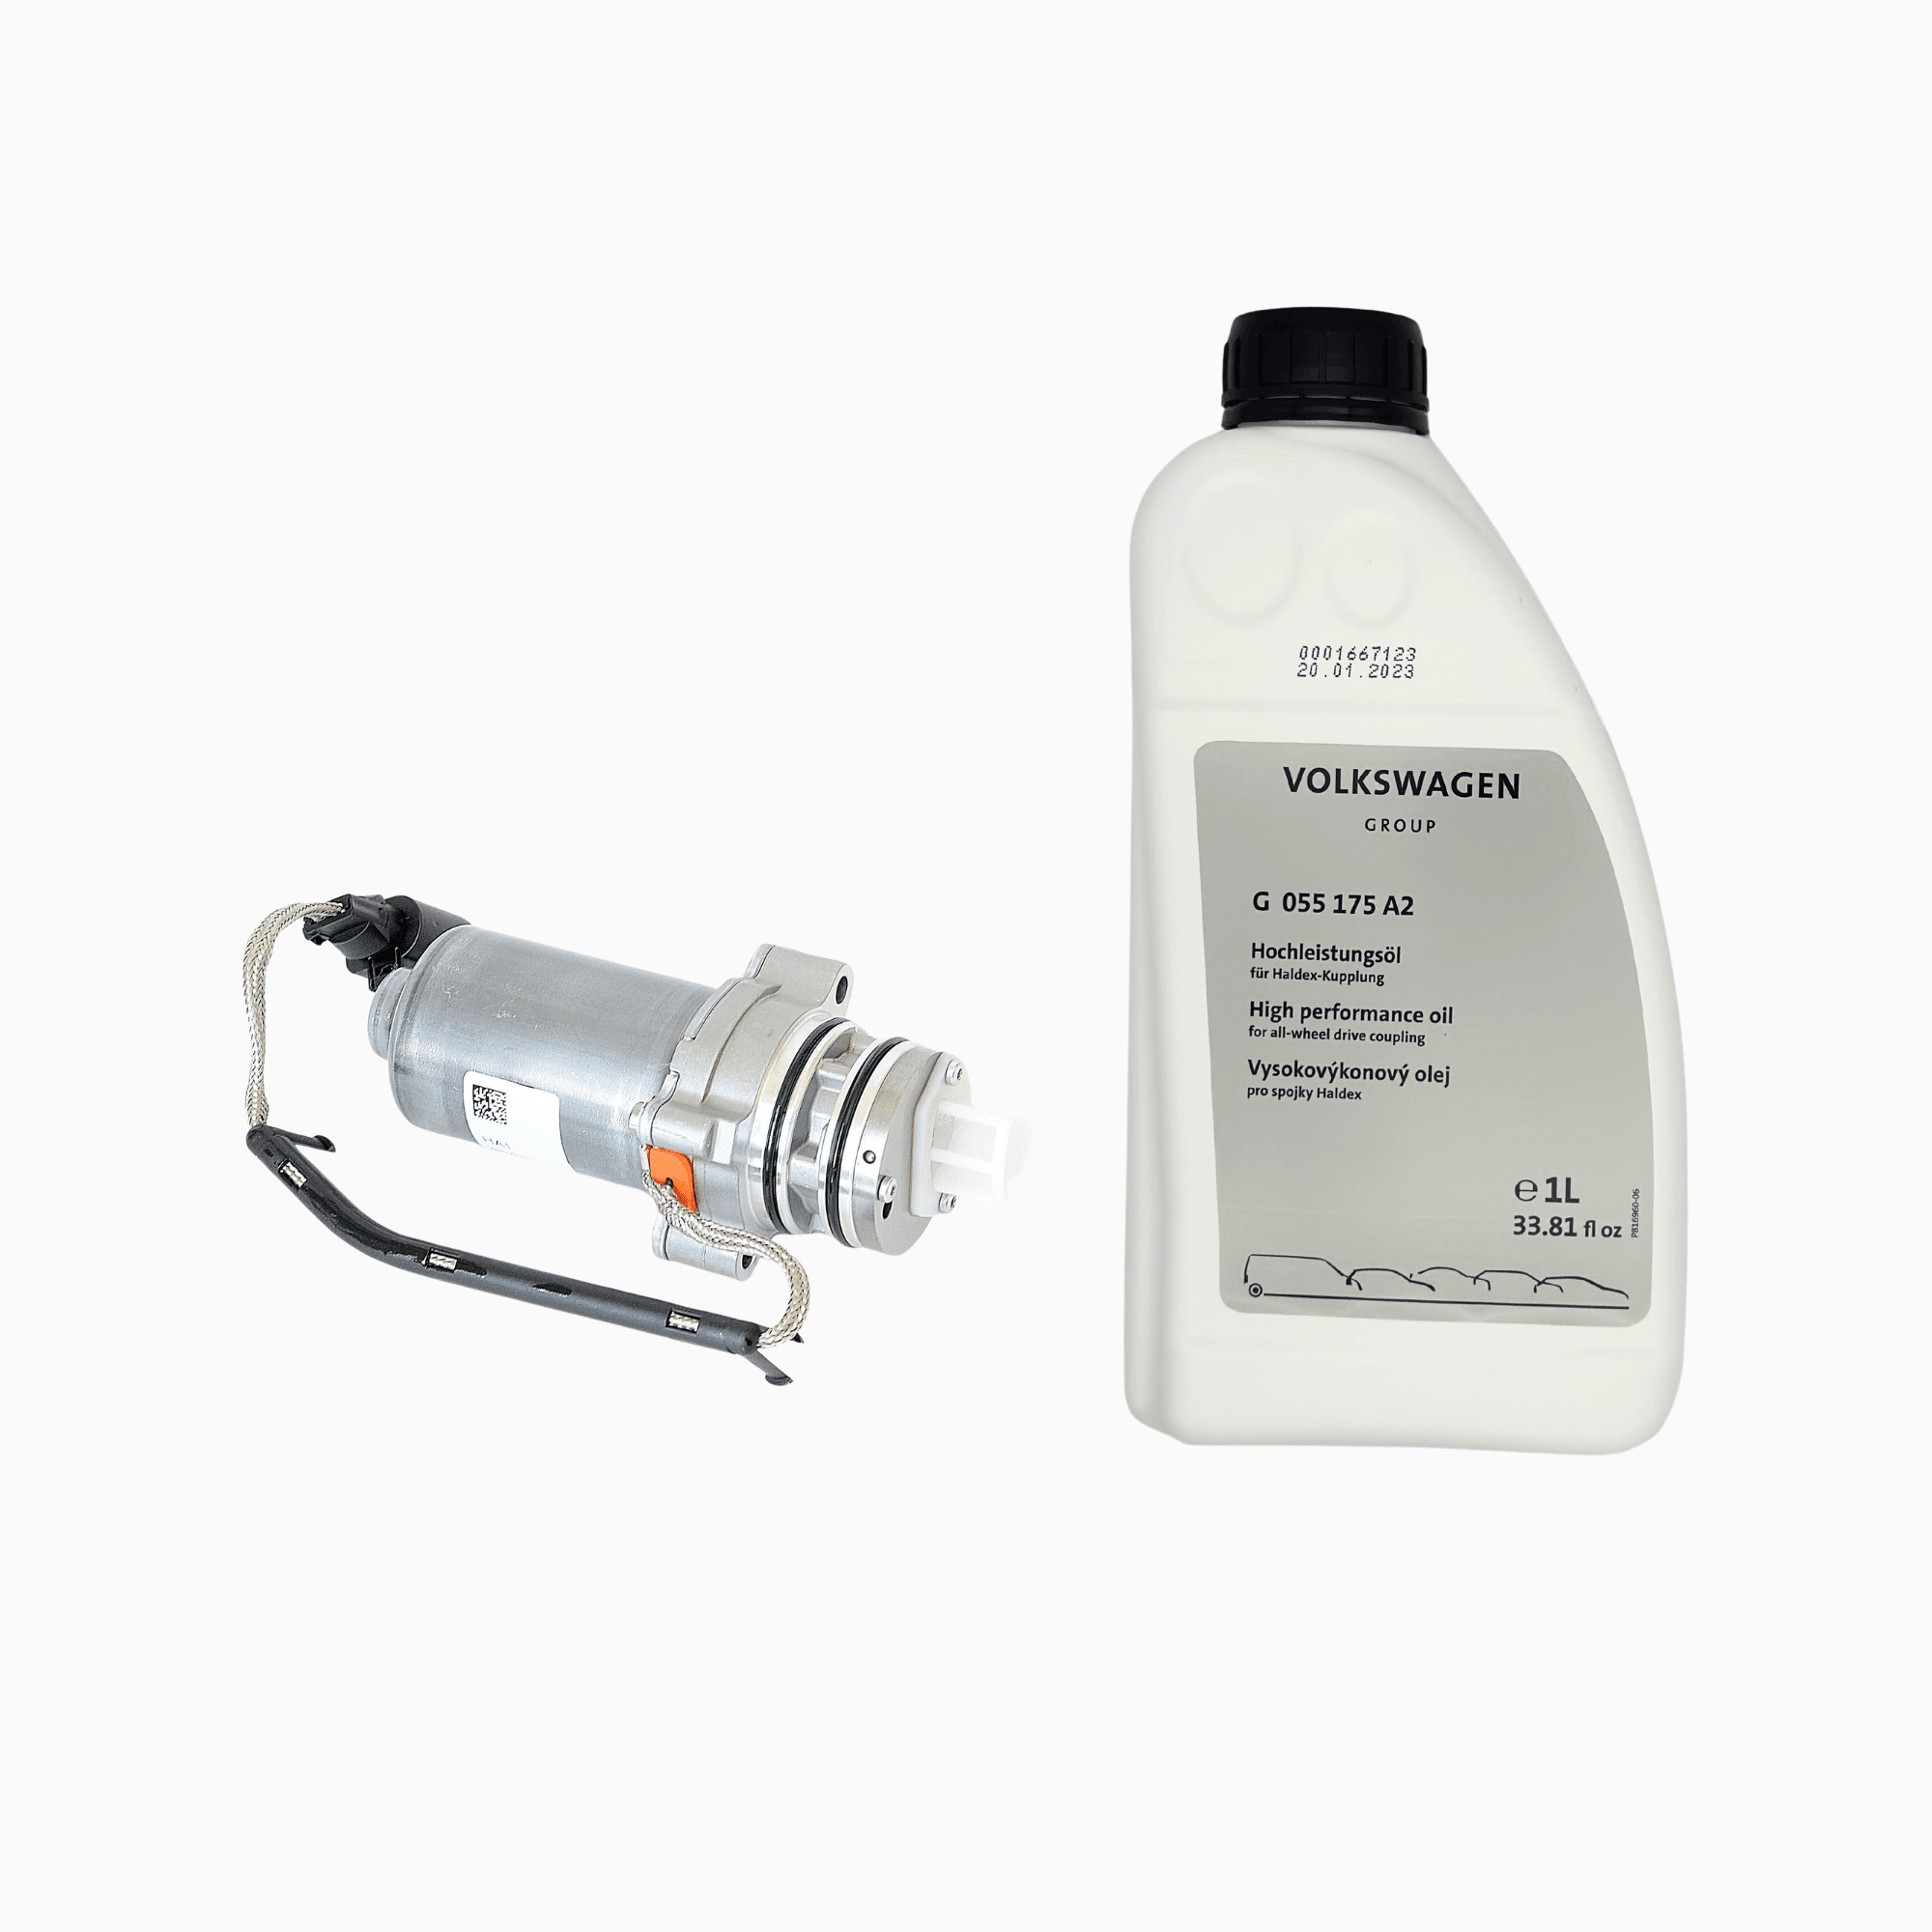 0CQ598549 pump & G055175A2 oil 5 th generation for Haldex